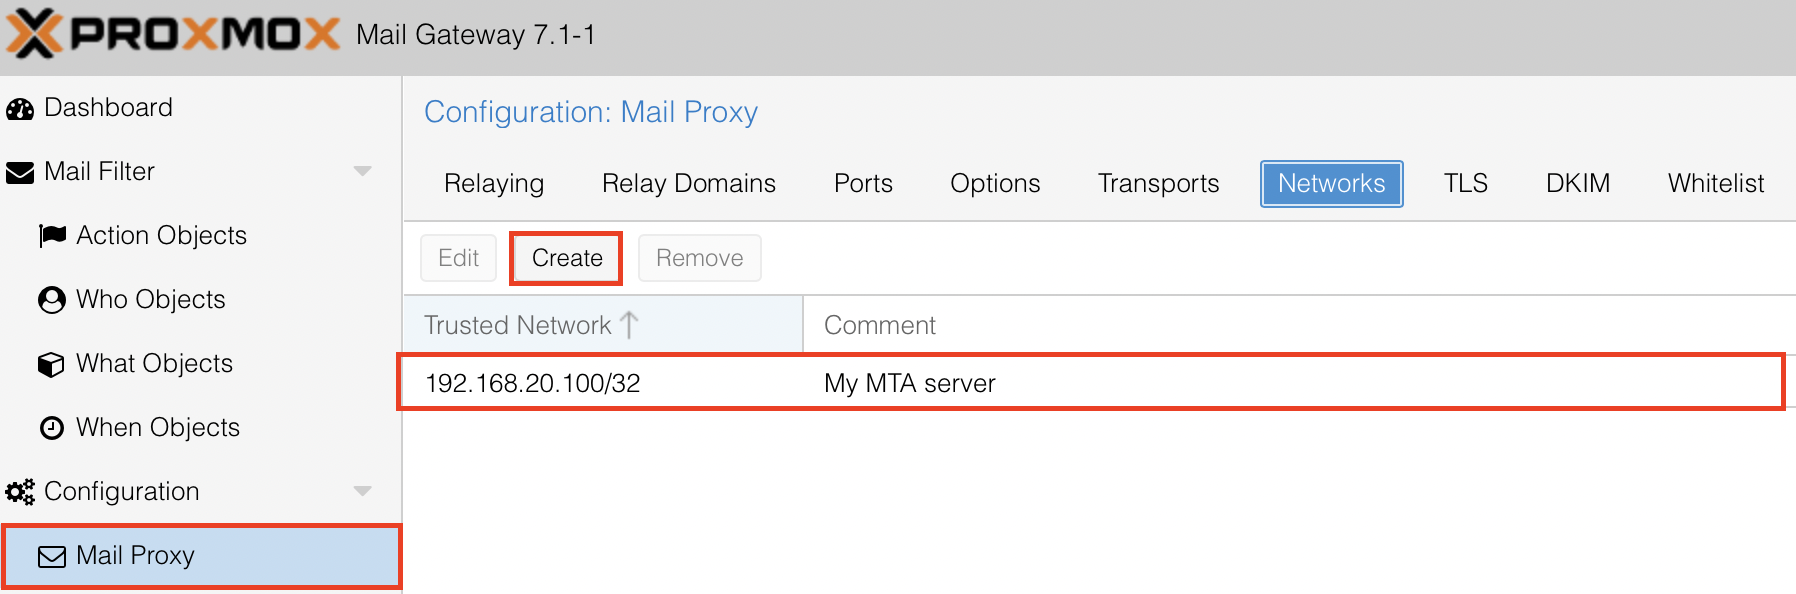 Mettre à jour automatiquement les paramètres Mail Proxy (Networks) de Proxmox Mail Gateway pour une IP dynamique (DynDNS par exemple)